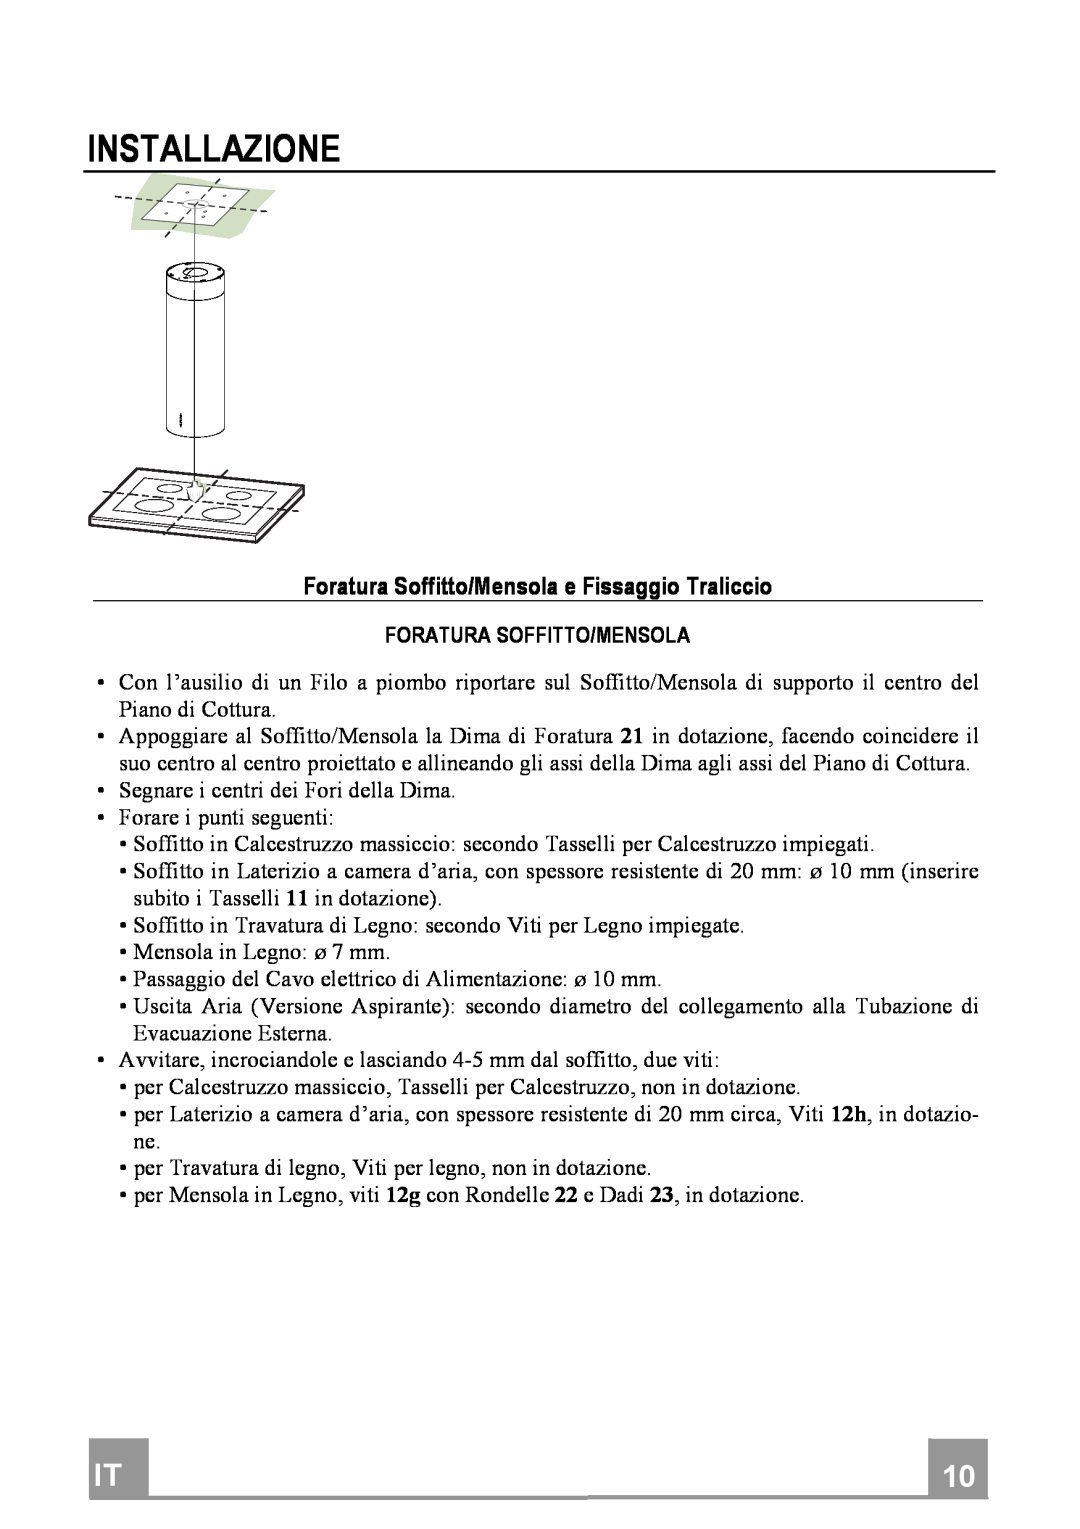 Franke Consumer Products FTU 3807 I manual Installazione, ForaturaSoffitto/MensolaeFissaggioTraliccio 